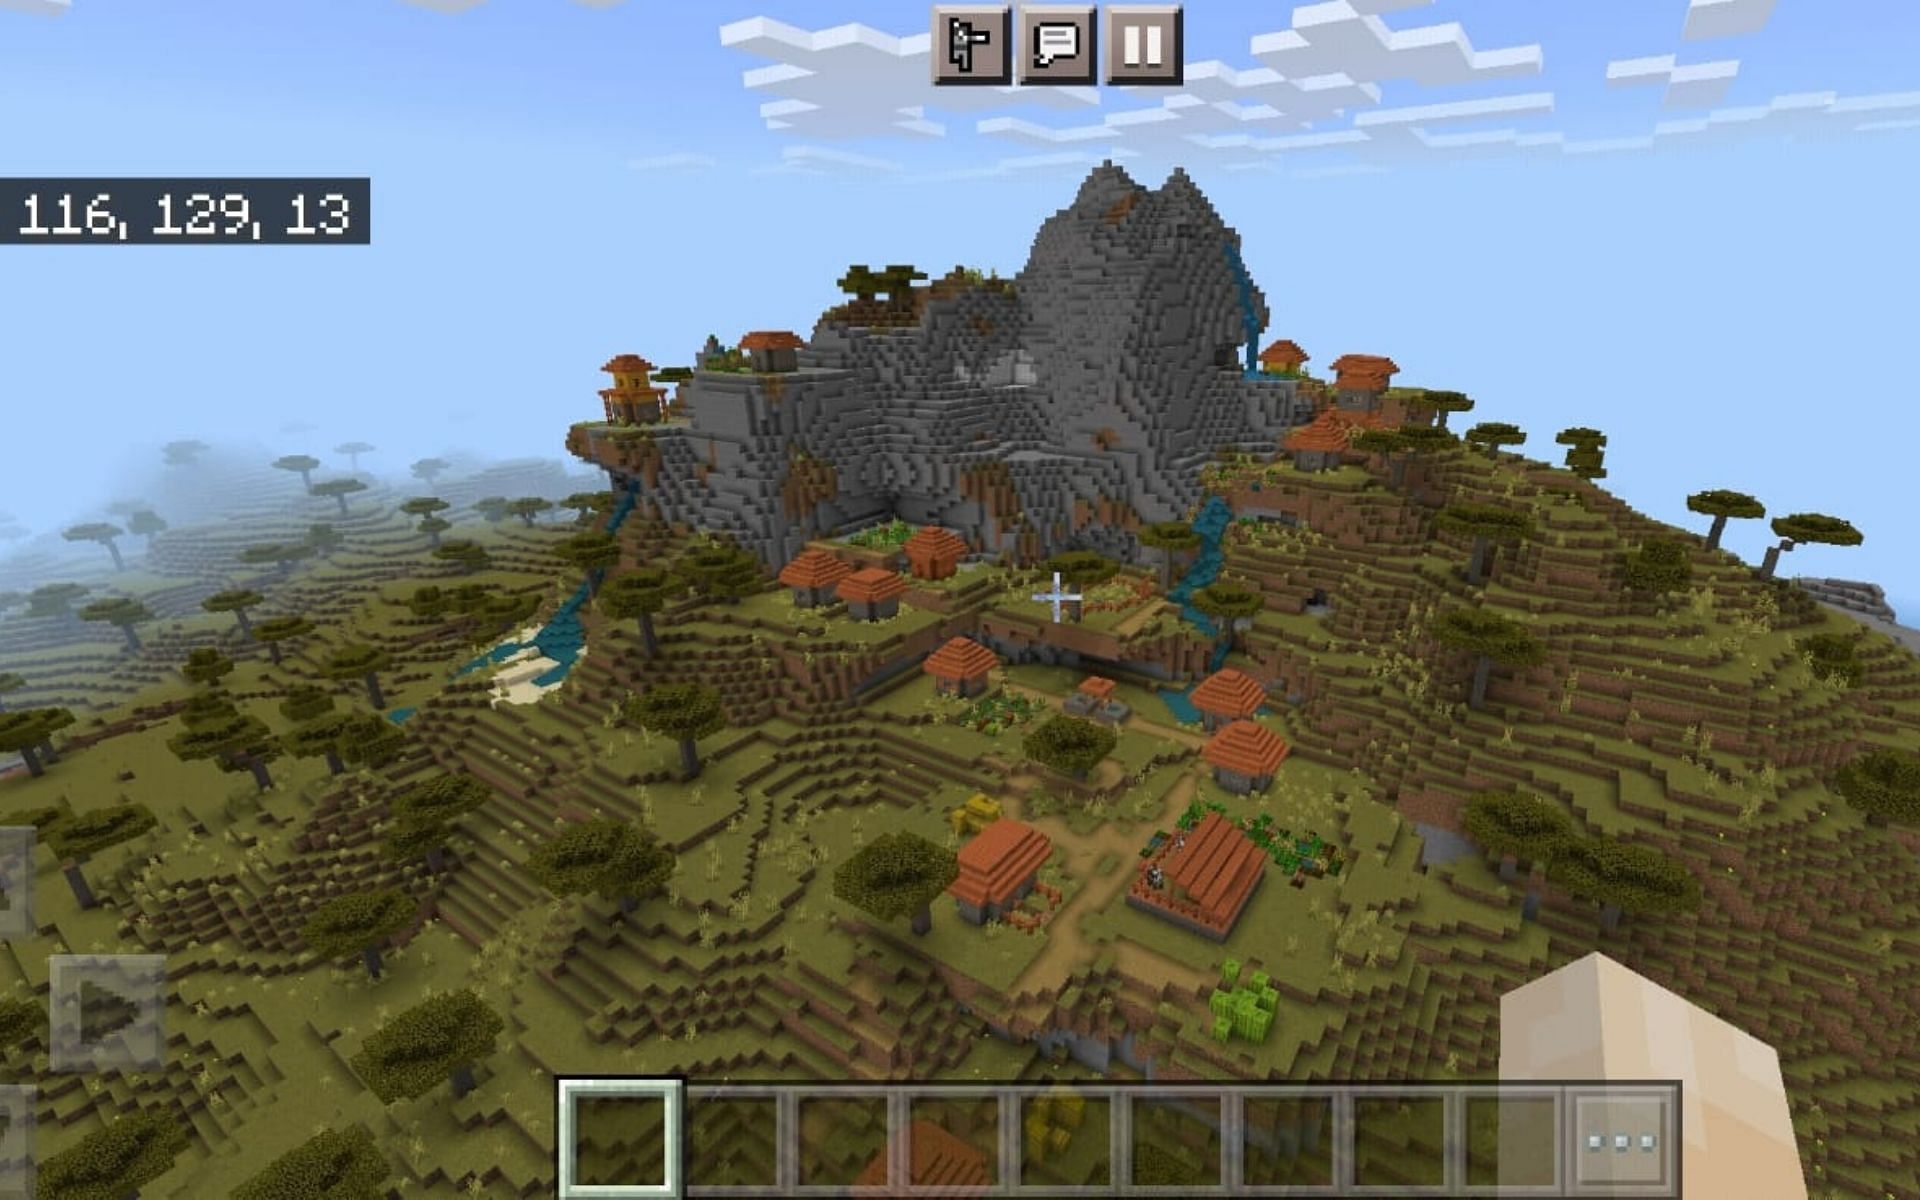 Players spawn in a Savanna Village (Image via Minecraft)